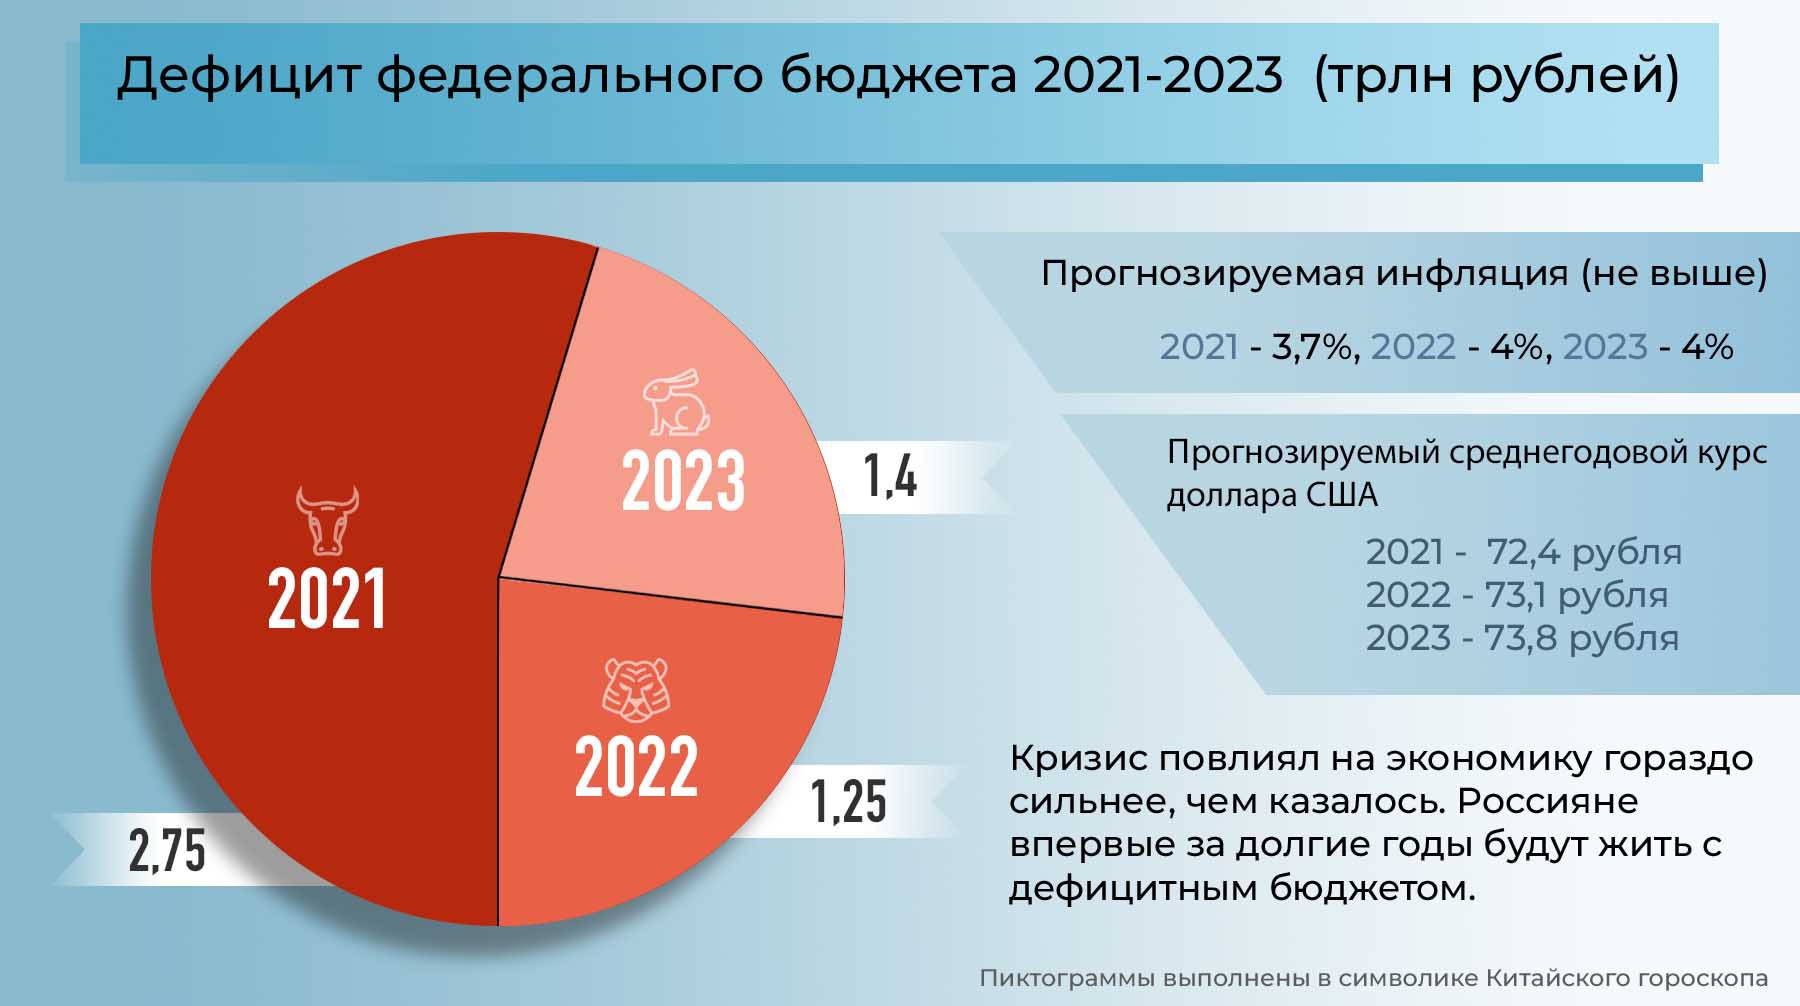 Проблемы рф 2023. Дефицит бюджета в 2021 году. Бюджет 2023. Бюджет РФ на 2023 год. Дефицит бюджета РФ 2023.